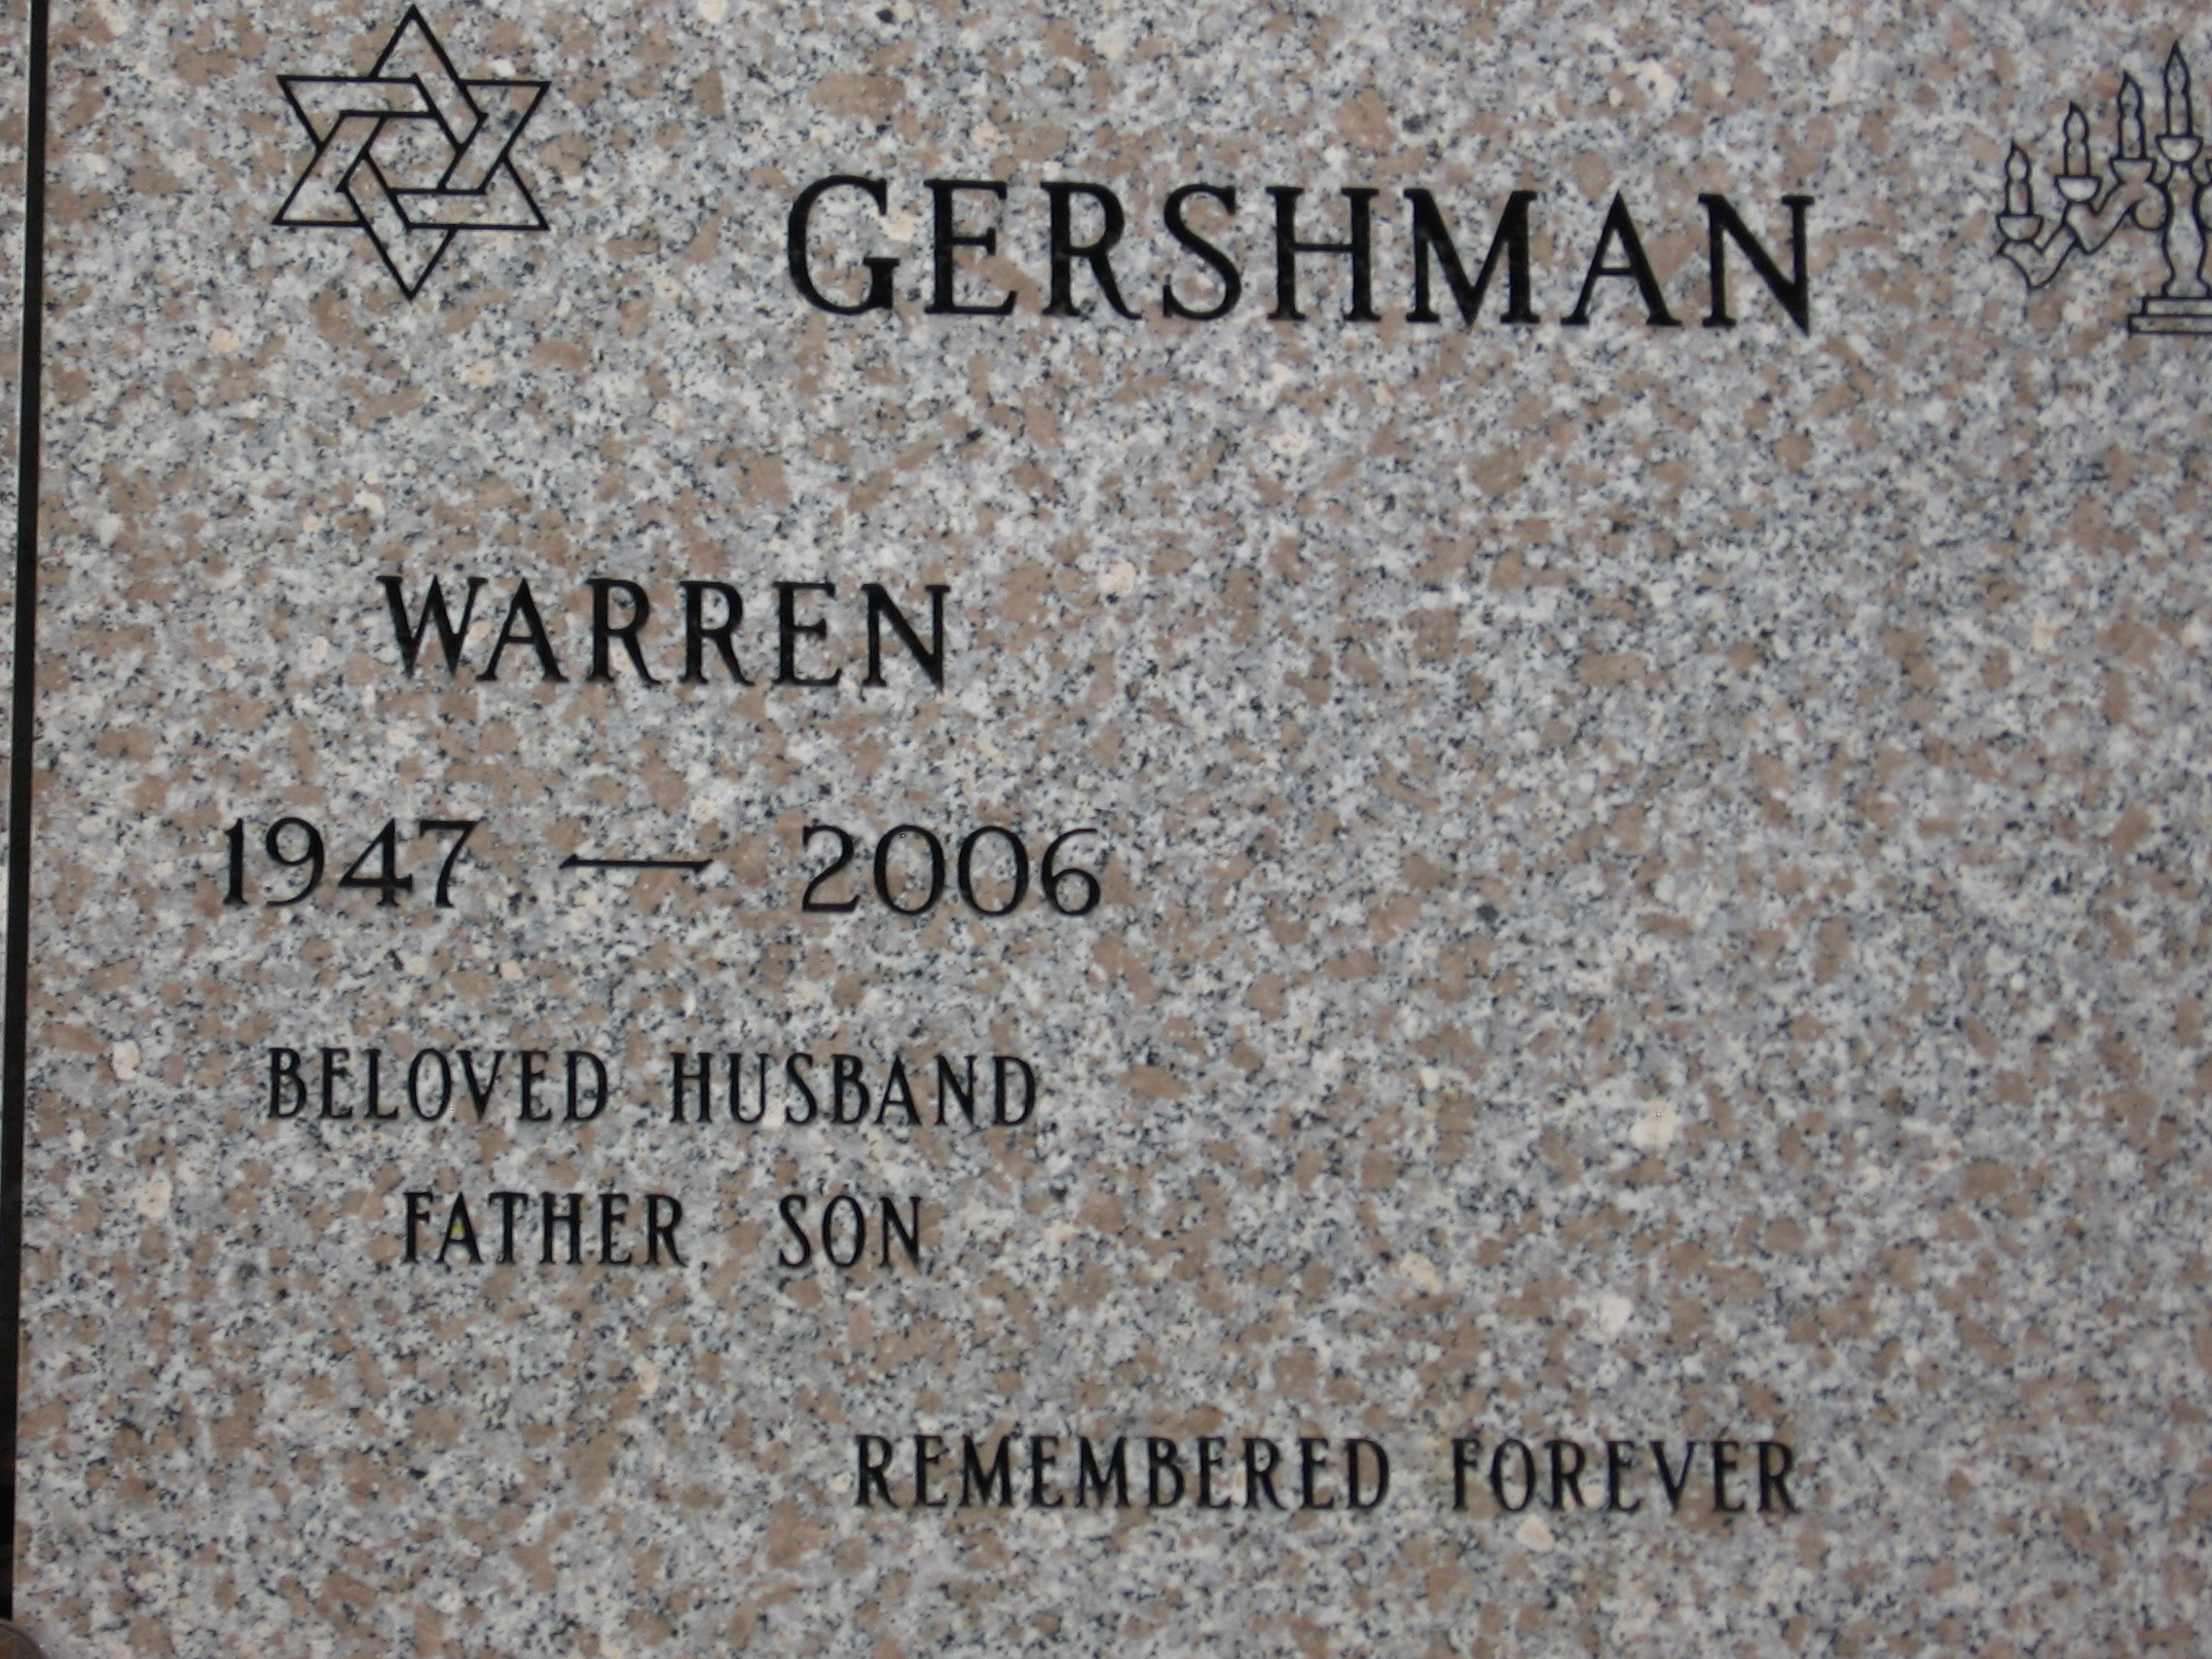 Warren Gershman